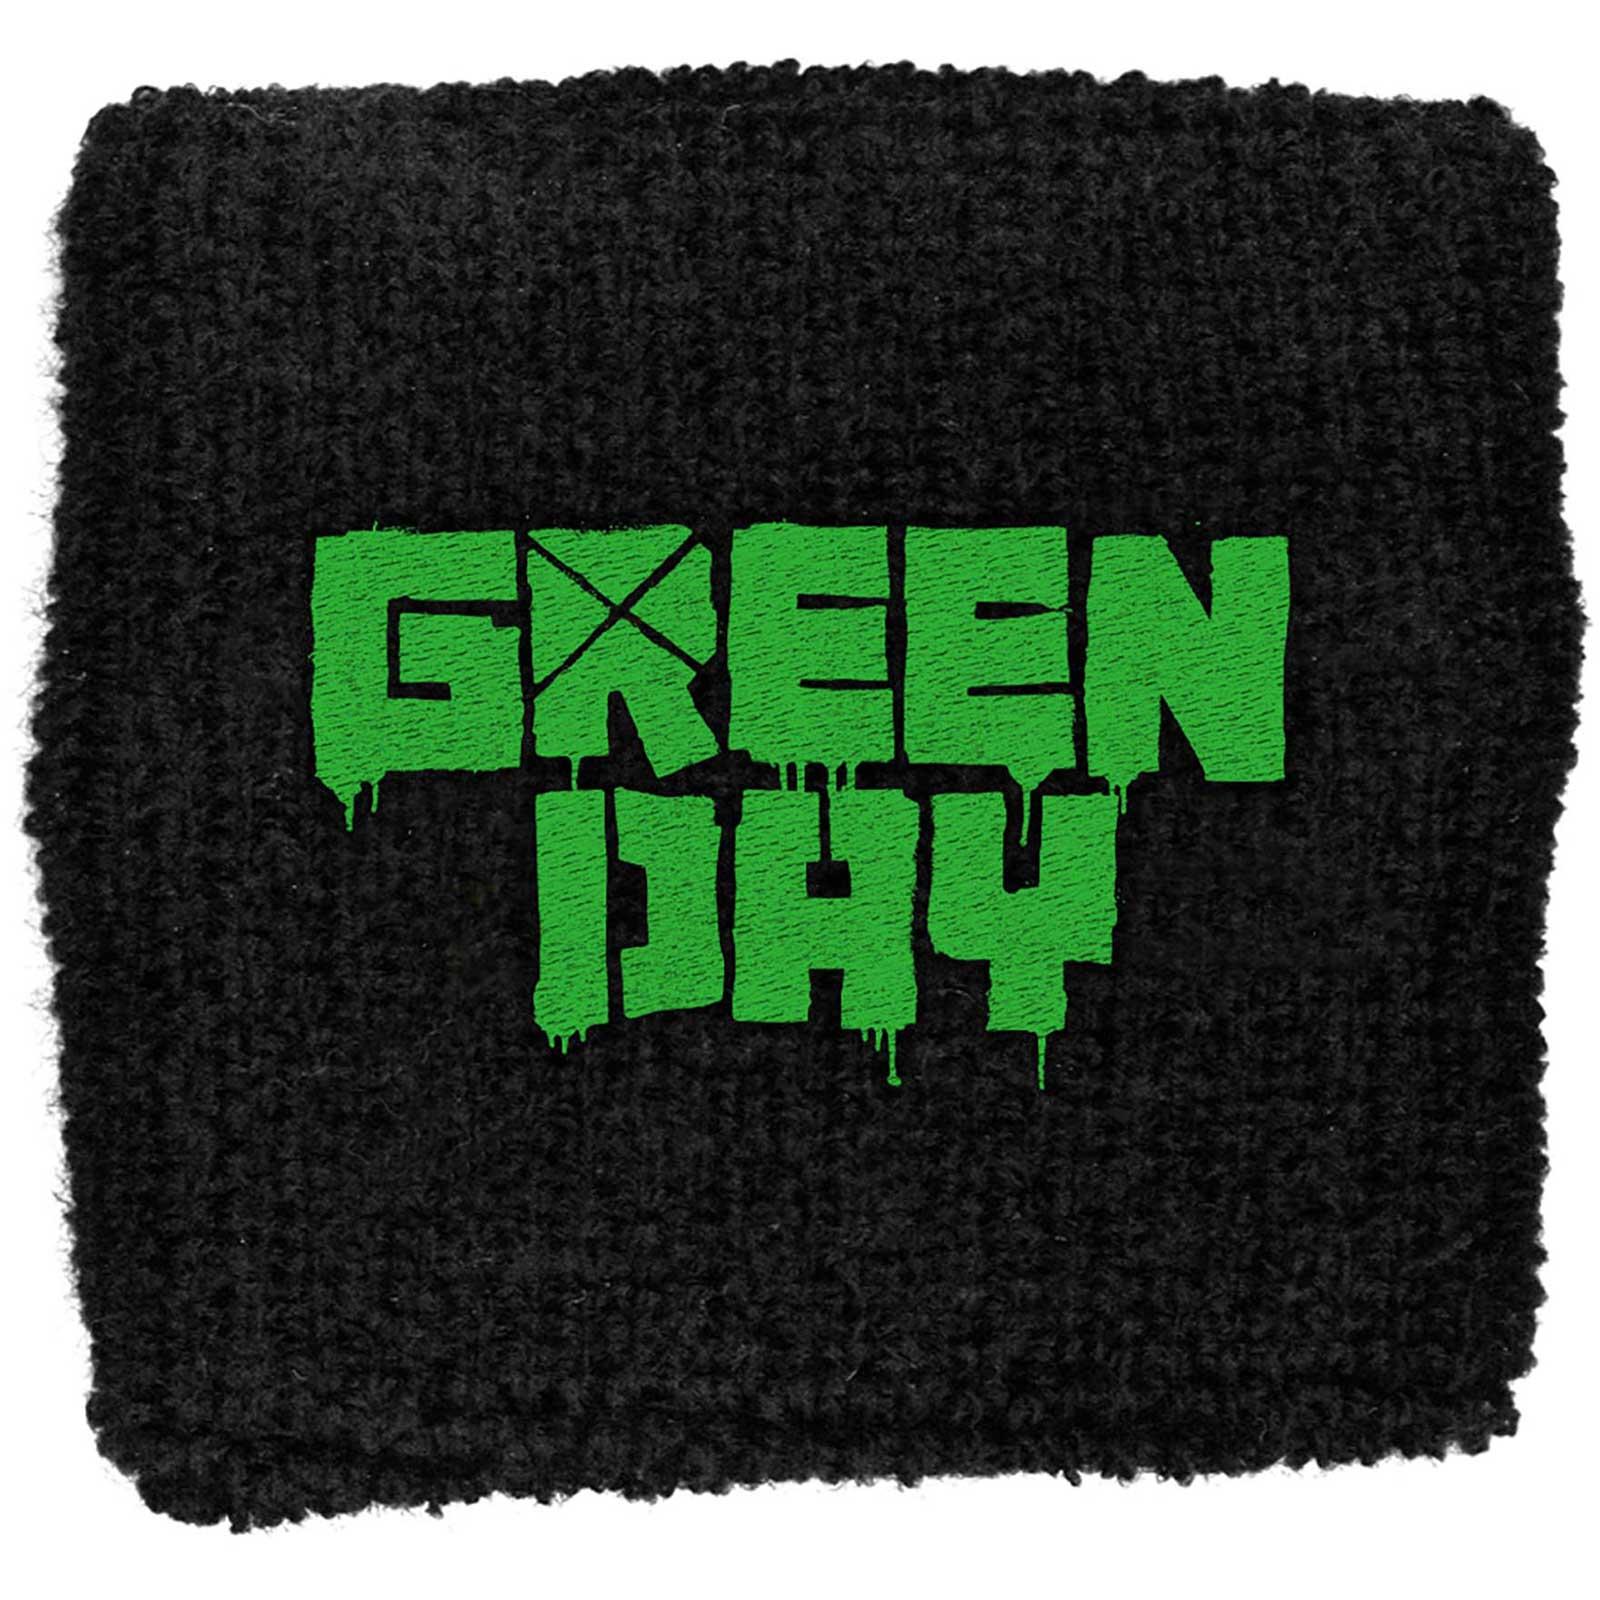 (グリーン デイ) Green Day オフィシャル商品 ユニセックス ロゴ 布地 リストバンド スエットバンド 【海外通販】